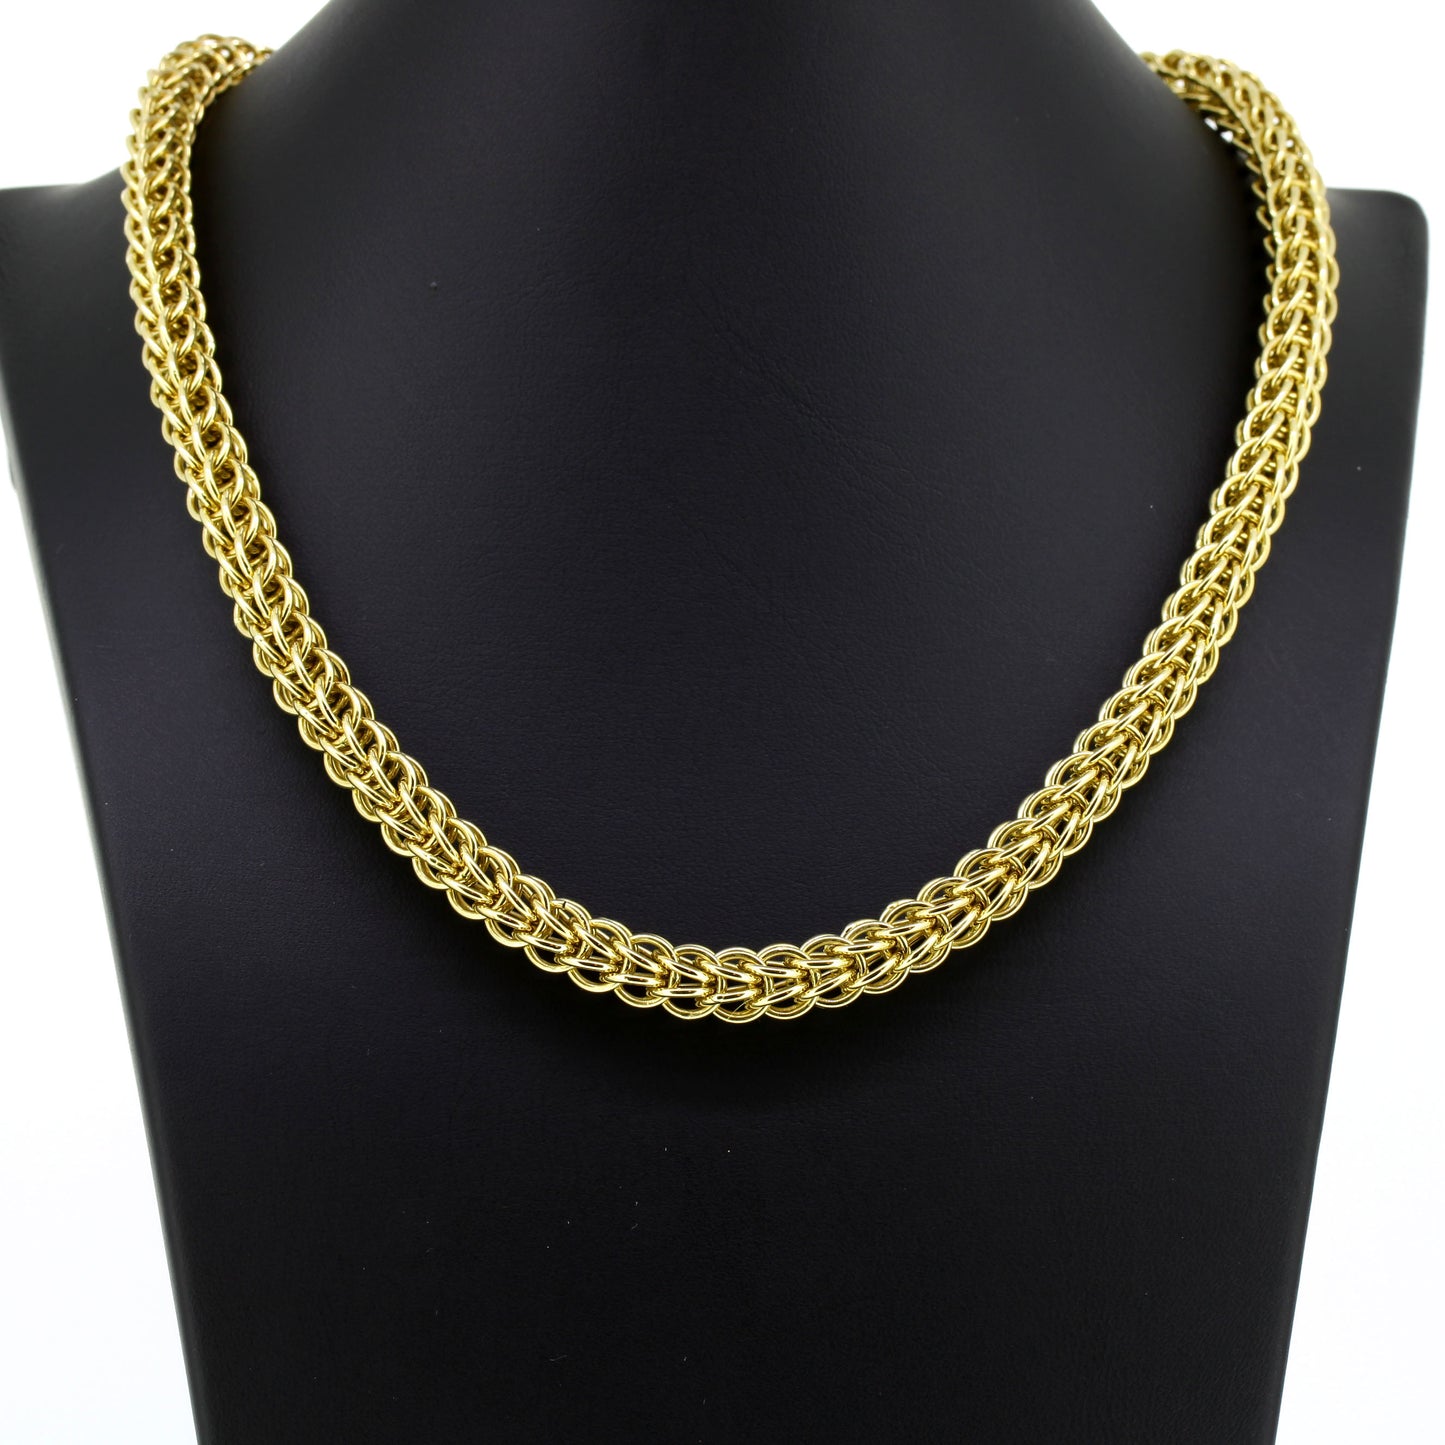 Halskette geflochten 585 Gold 14 Kt Gelbgold - Wert 3130,-